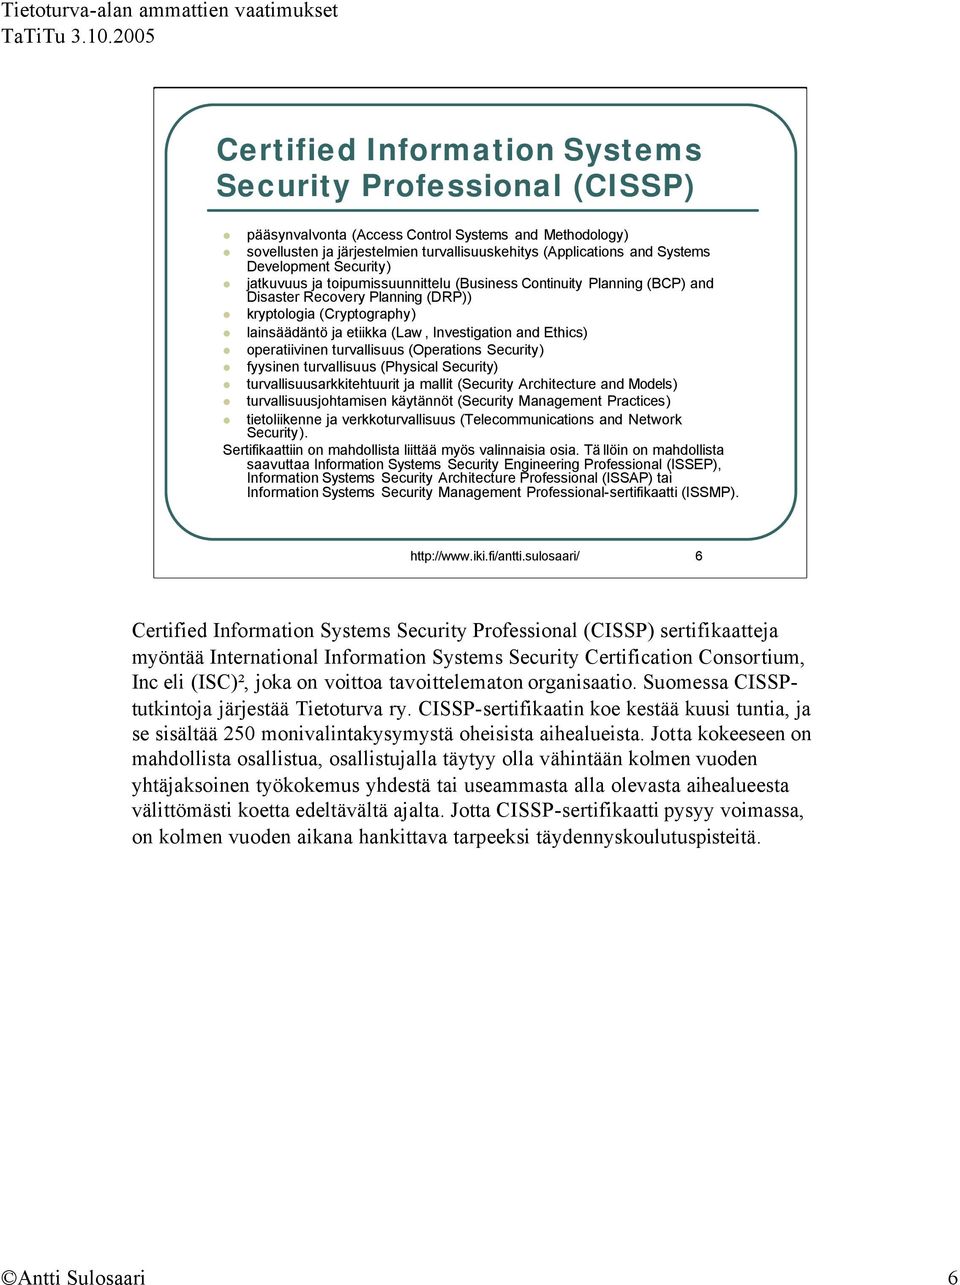 and Ethics) operatiivinen turvallisuus (Operations Security) fyysinen turvallisuus (Physical Security) turvallisuusarkkitehtuurit ja mallit (Security Architecture and Models) turvallisuusjohtamisen